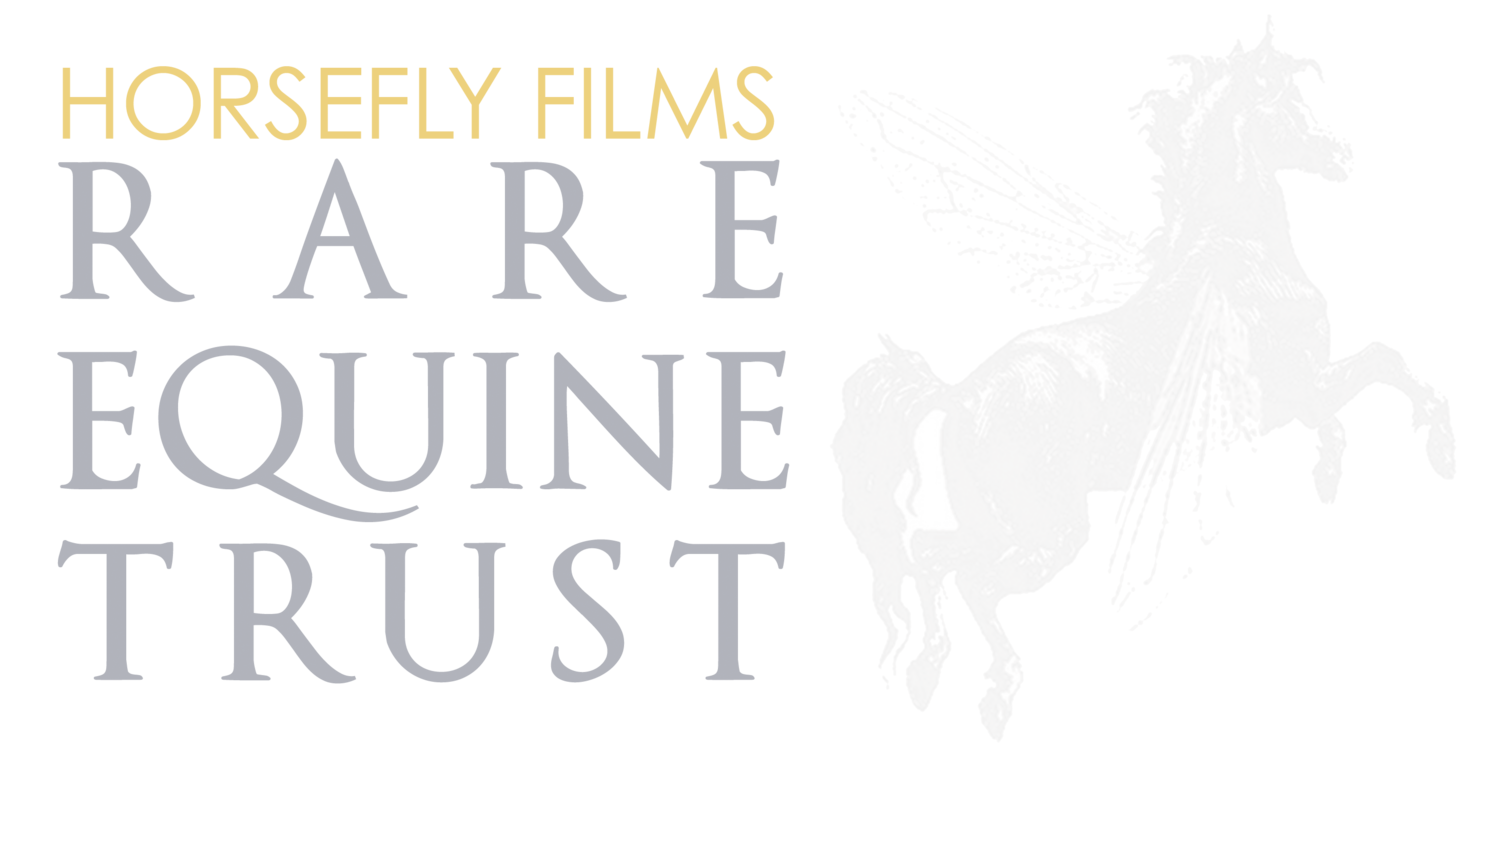 HF Films Rare Equine Trust